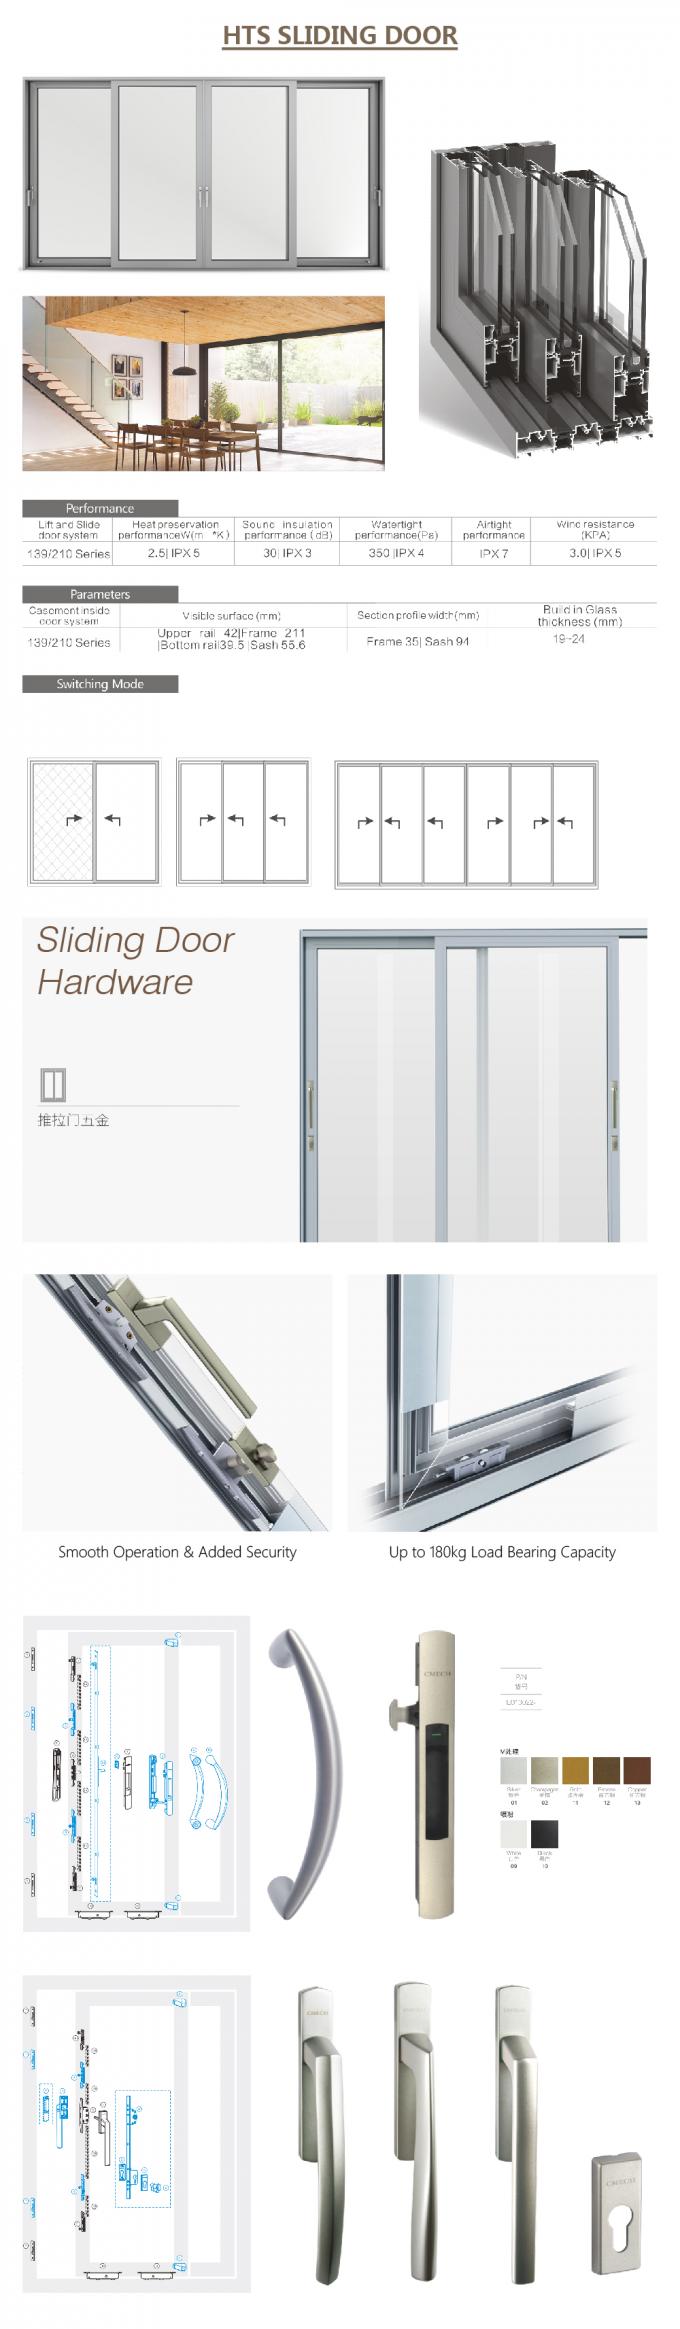 συρόμενες πόρτες αλουμινίου και παράθυρα, συρόμενη μετριασμένη πόρτα ντους γυαλιού, συρόμενη πόρτα ντουλαπών σχεδιαγράμματος αλουμινίου, λεπτομέρειες πορτών ολίσθησης αλουμινίου